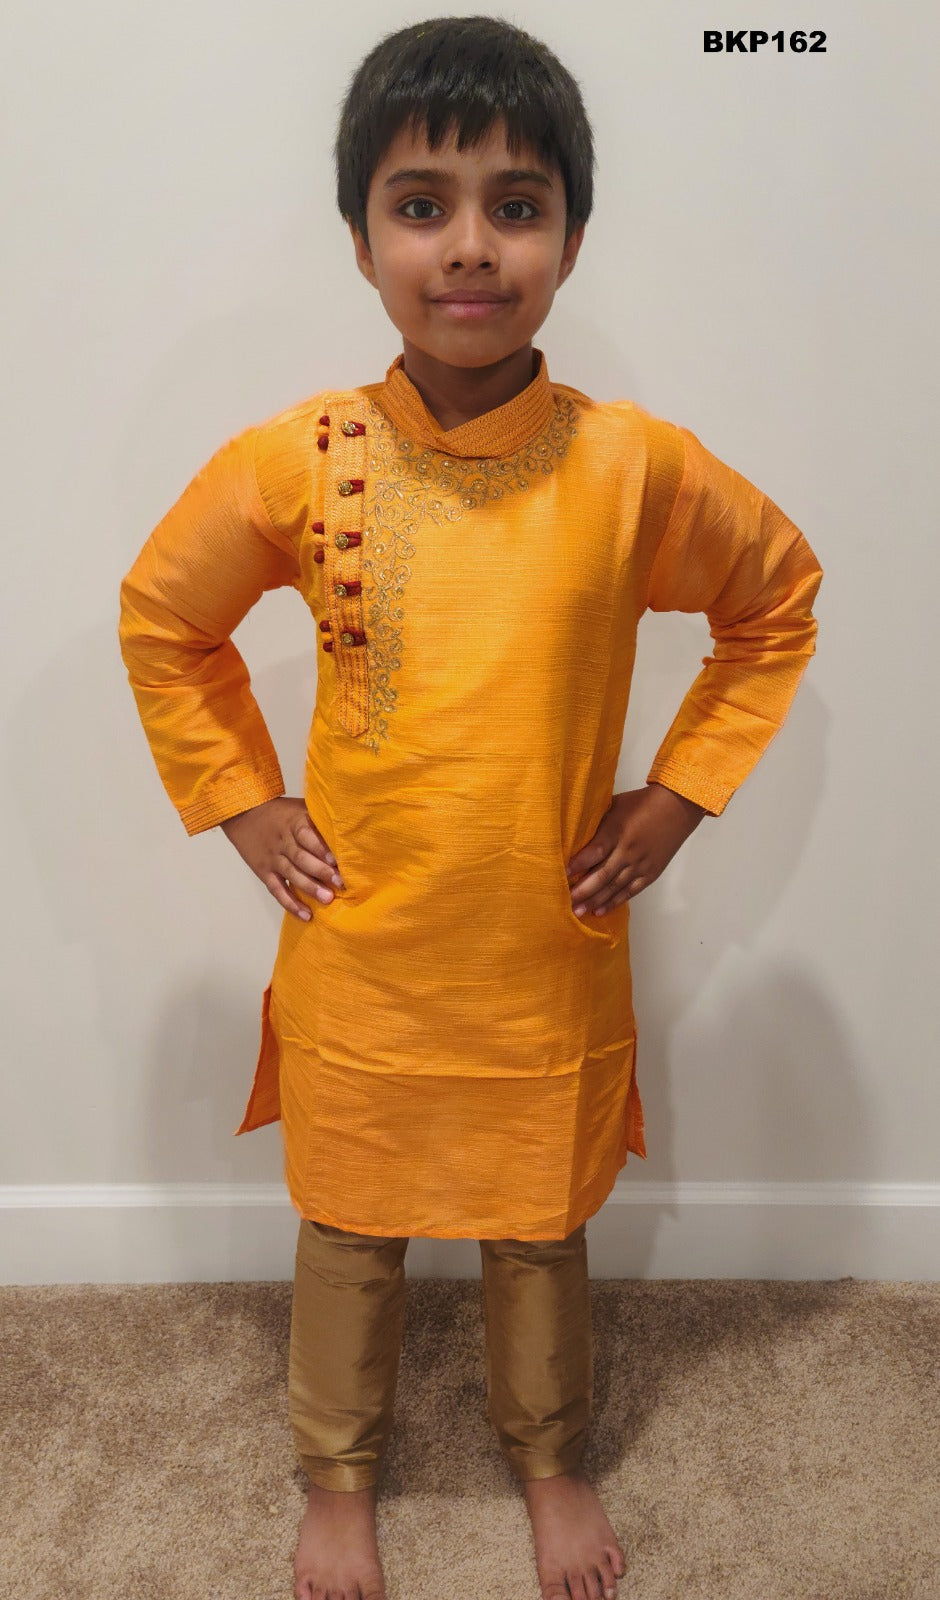 BKP162 - Orange rawsilk kurta pajama set with embroidery around the neck line